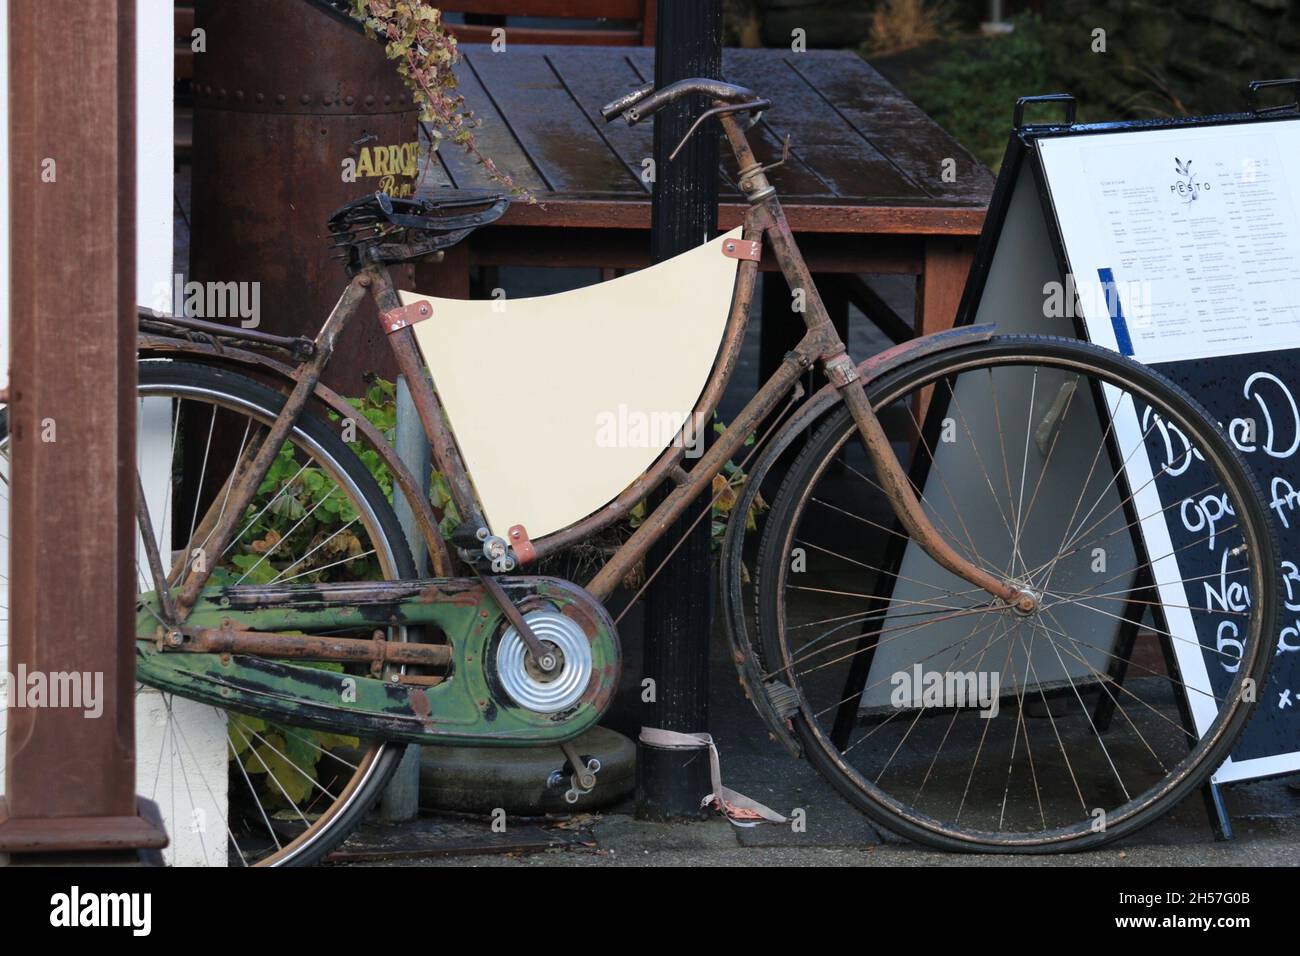 Biciclette vecchie e arrugginite di fronte ad un ristorante. Foto Stock